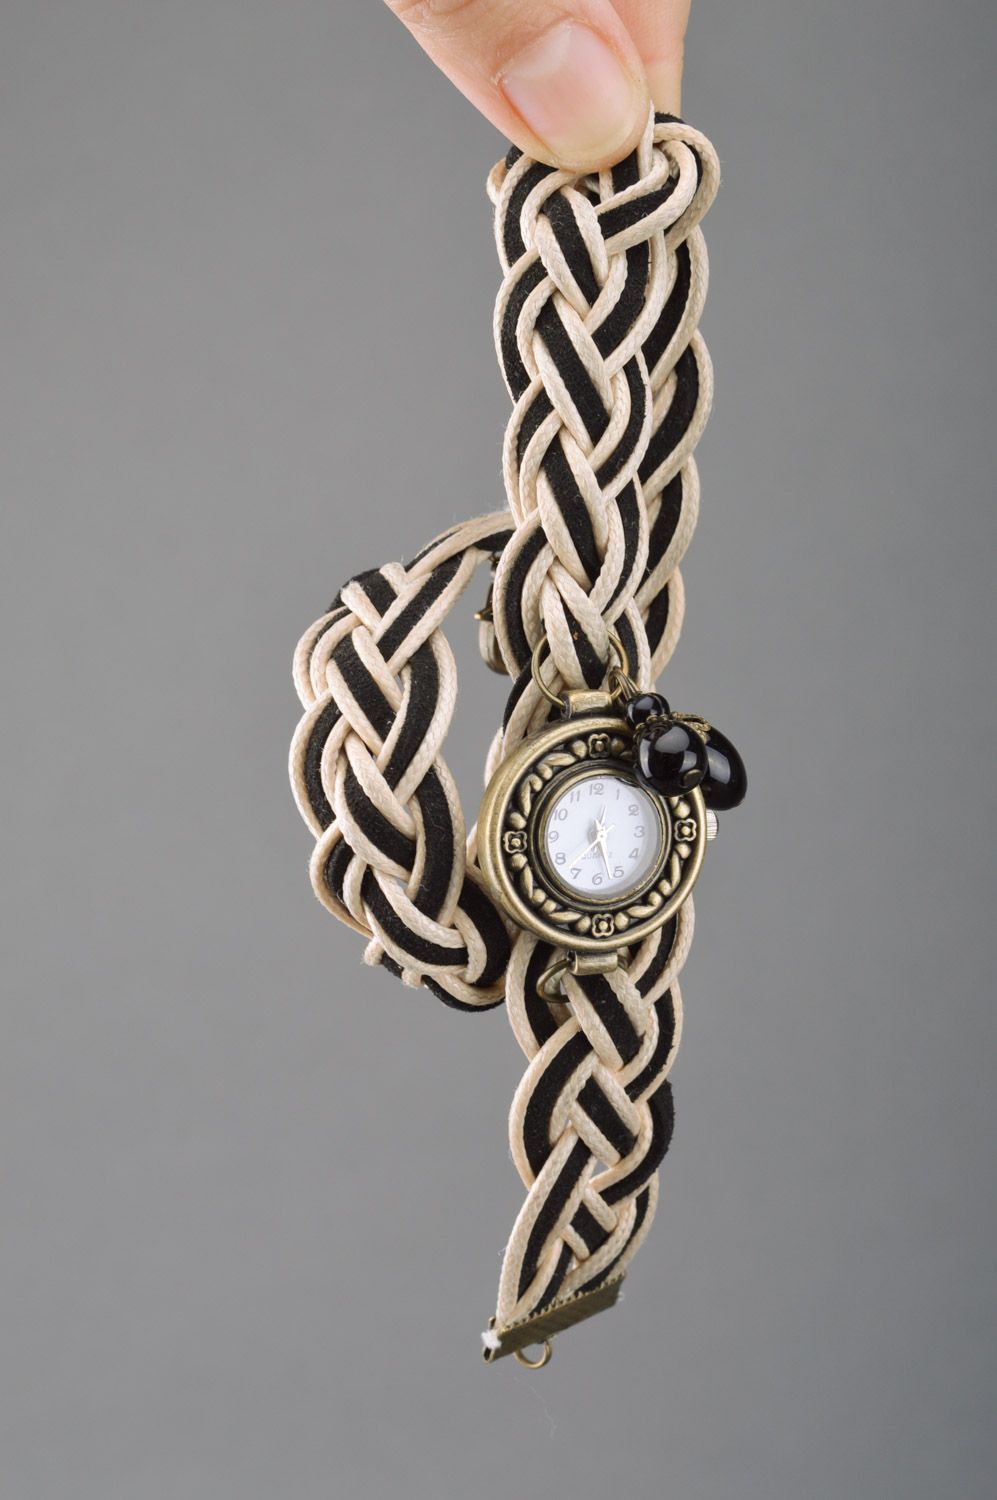 Montre femme bracelet tressé beige et noir ronde originale mécanique faite main photo 3